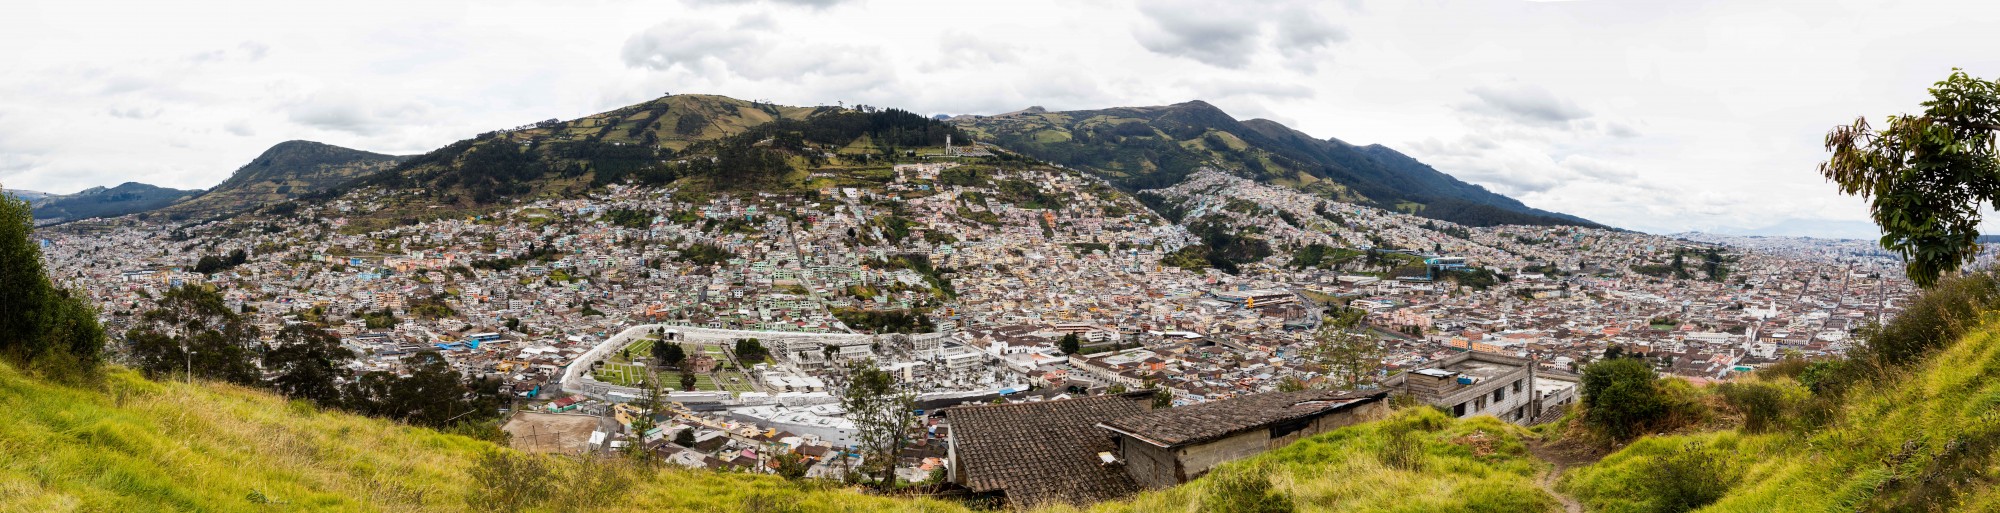 Vista de Quito desde El Panecillo, Ecuador, 2015-07-22, DD 50-54